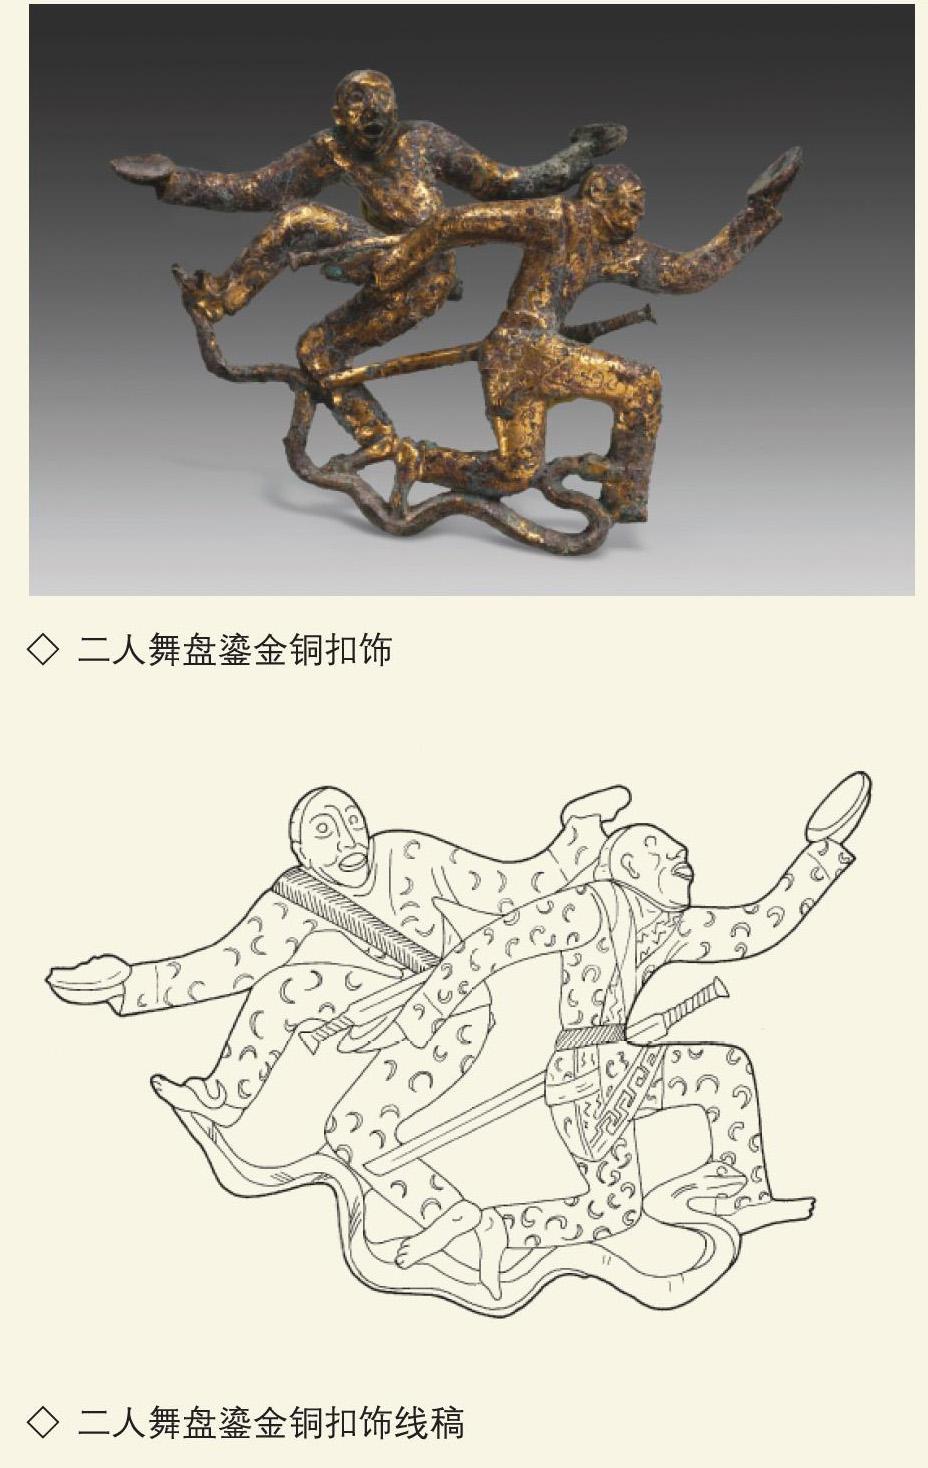 古滇国青铜器以精美的艺术形式表达和高超的制作工艺,为我们展现了